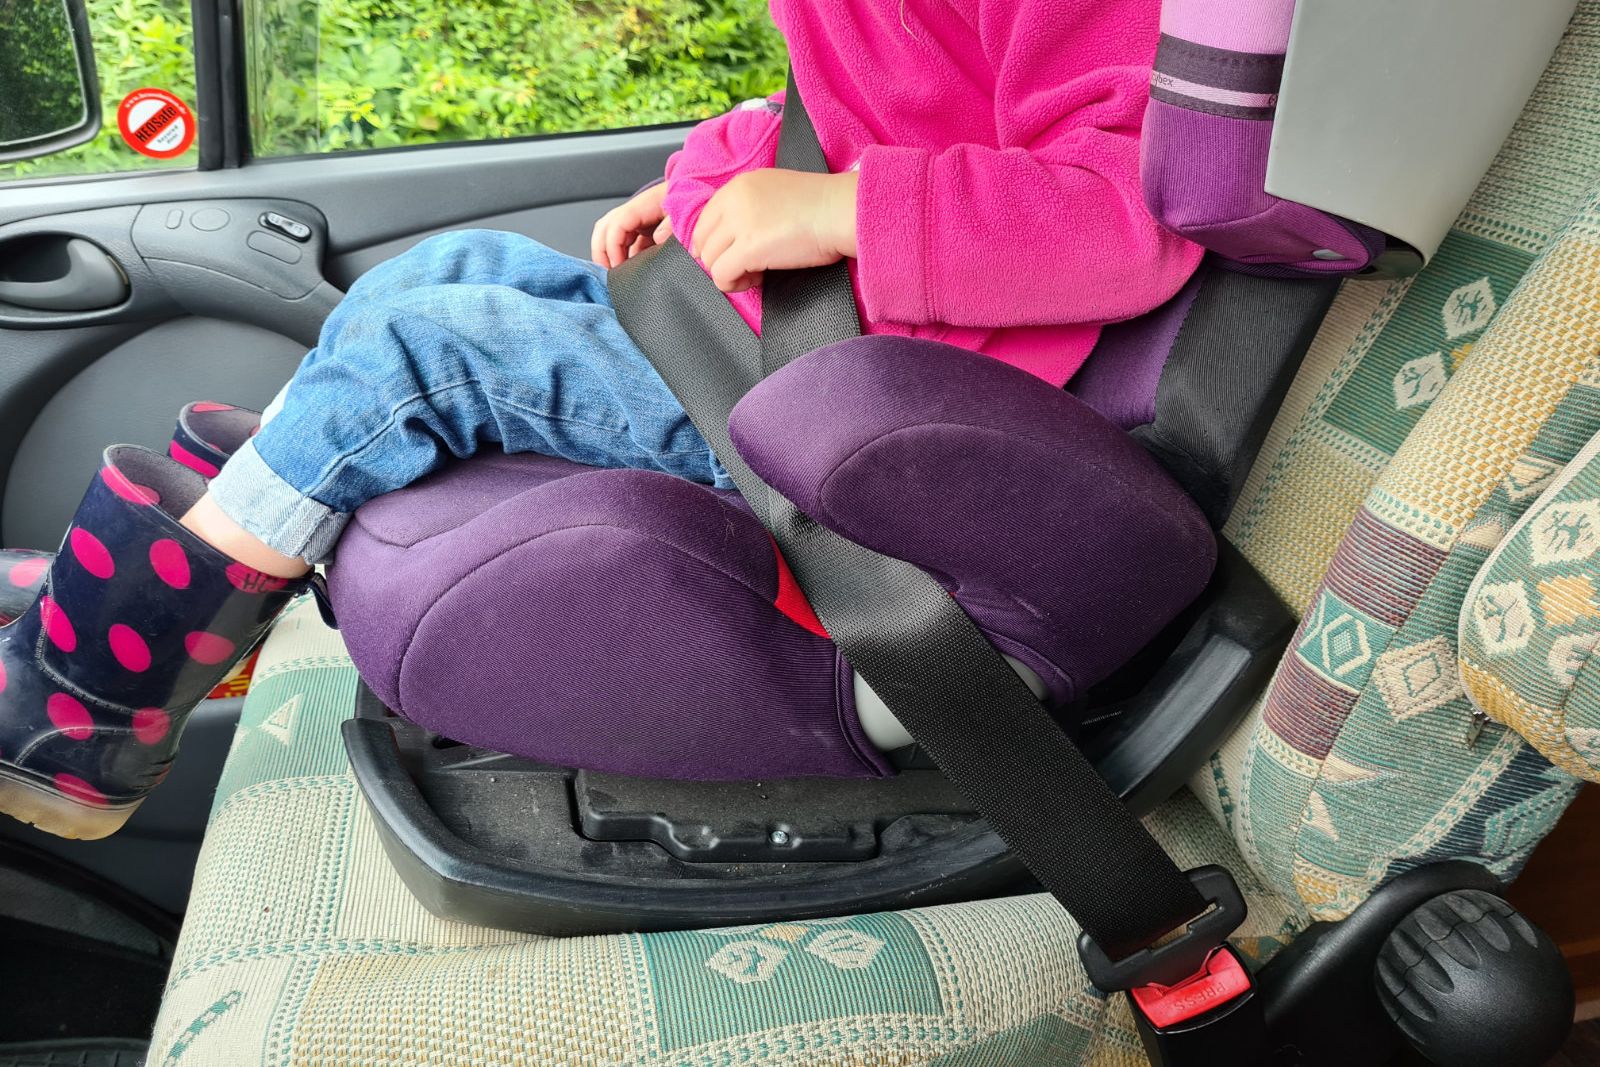 Original VW Isofix Halter vorn Beifahrersitz Kindersitz Befestigung  Verankerung